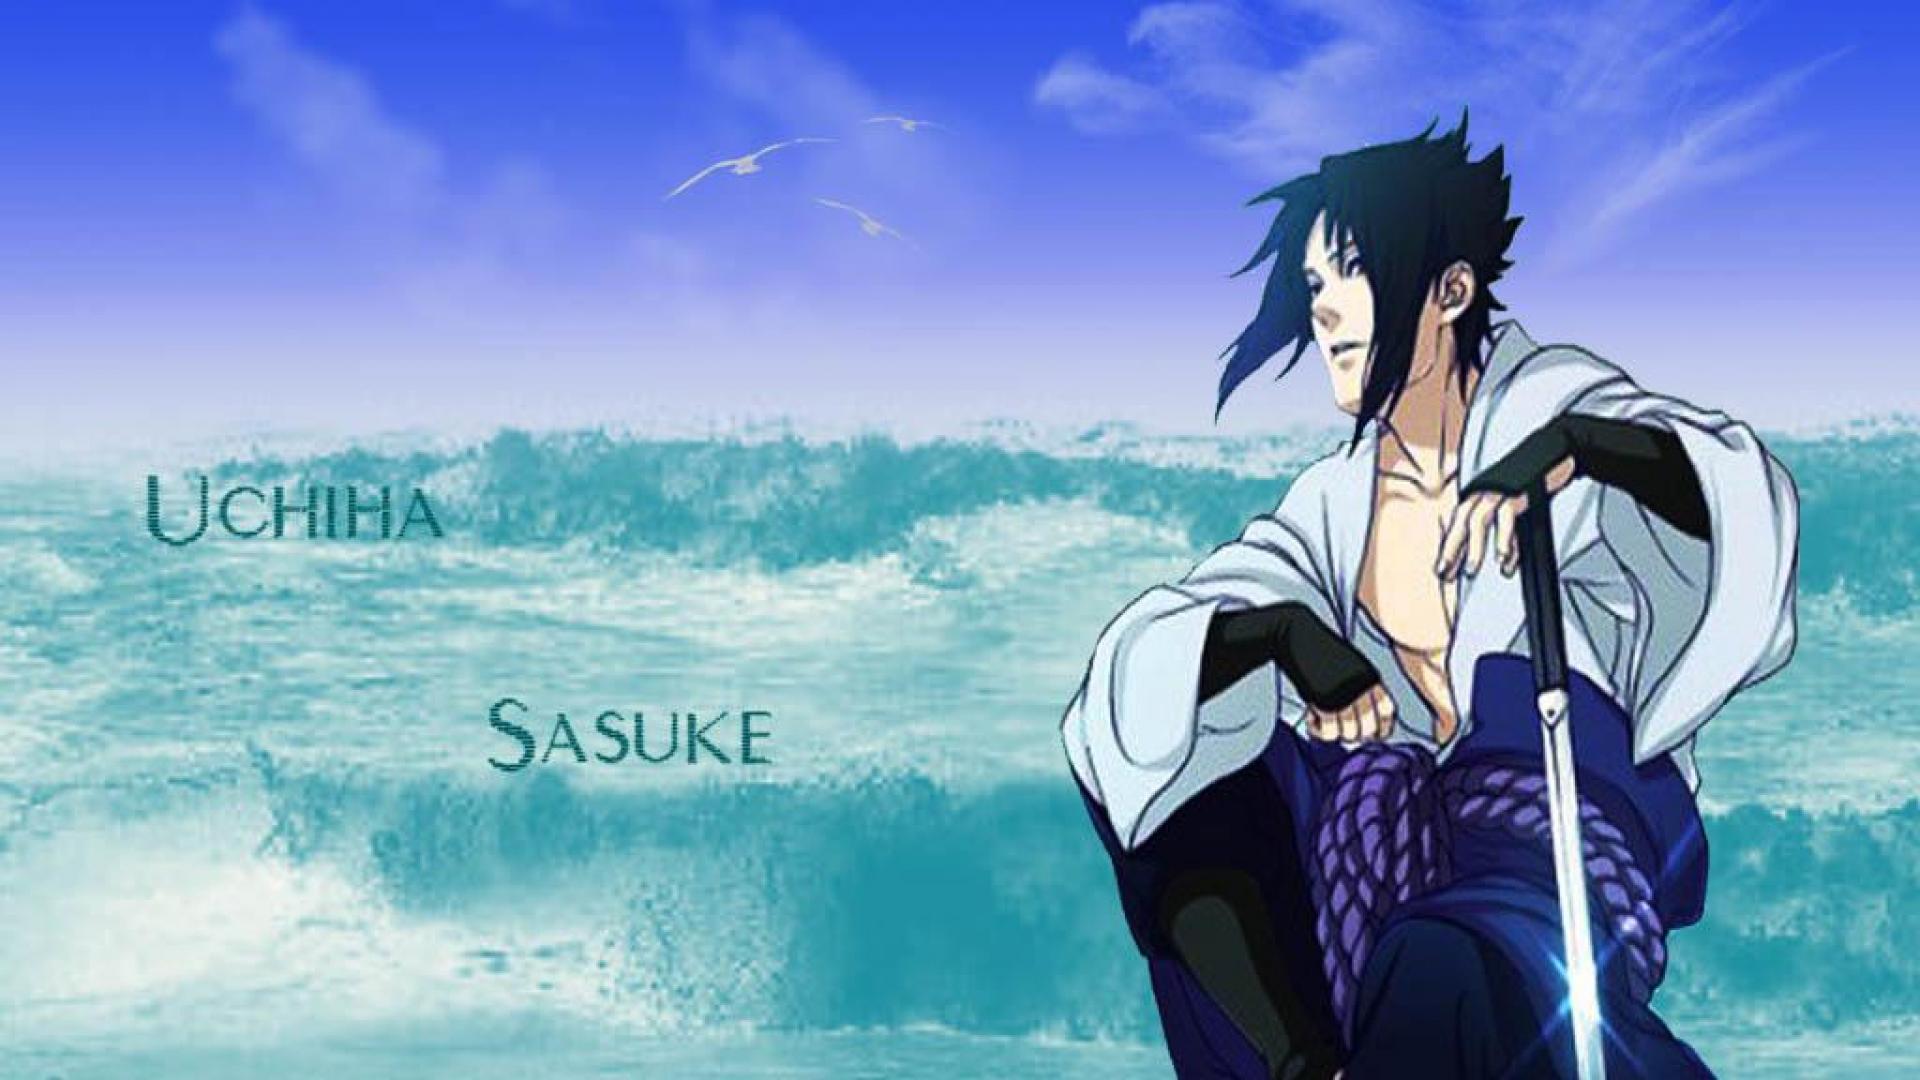 A picture of Sasuke from Naruto with his signature Sharingan eyes - Sasuke Uchiha